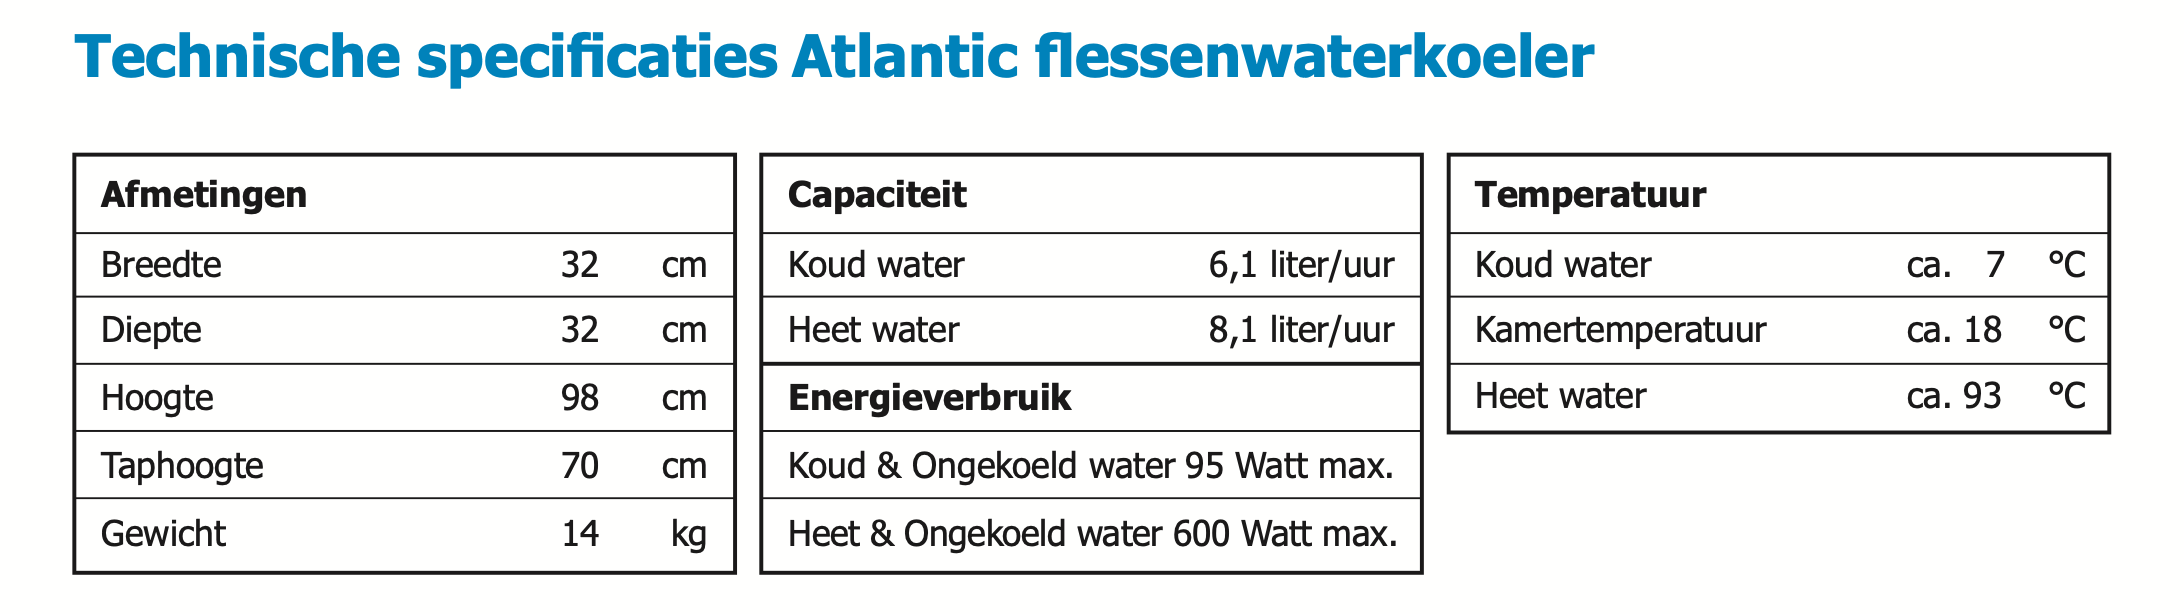 technische specificaties Atlantic flessen waterkoeler